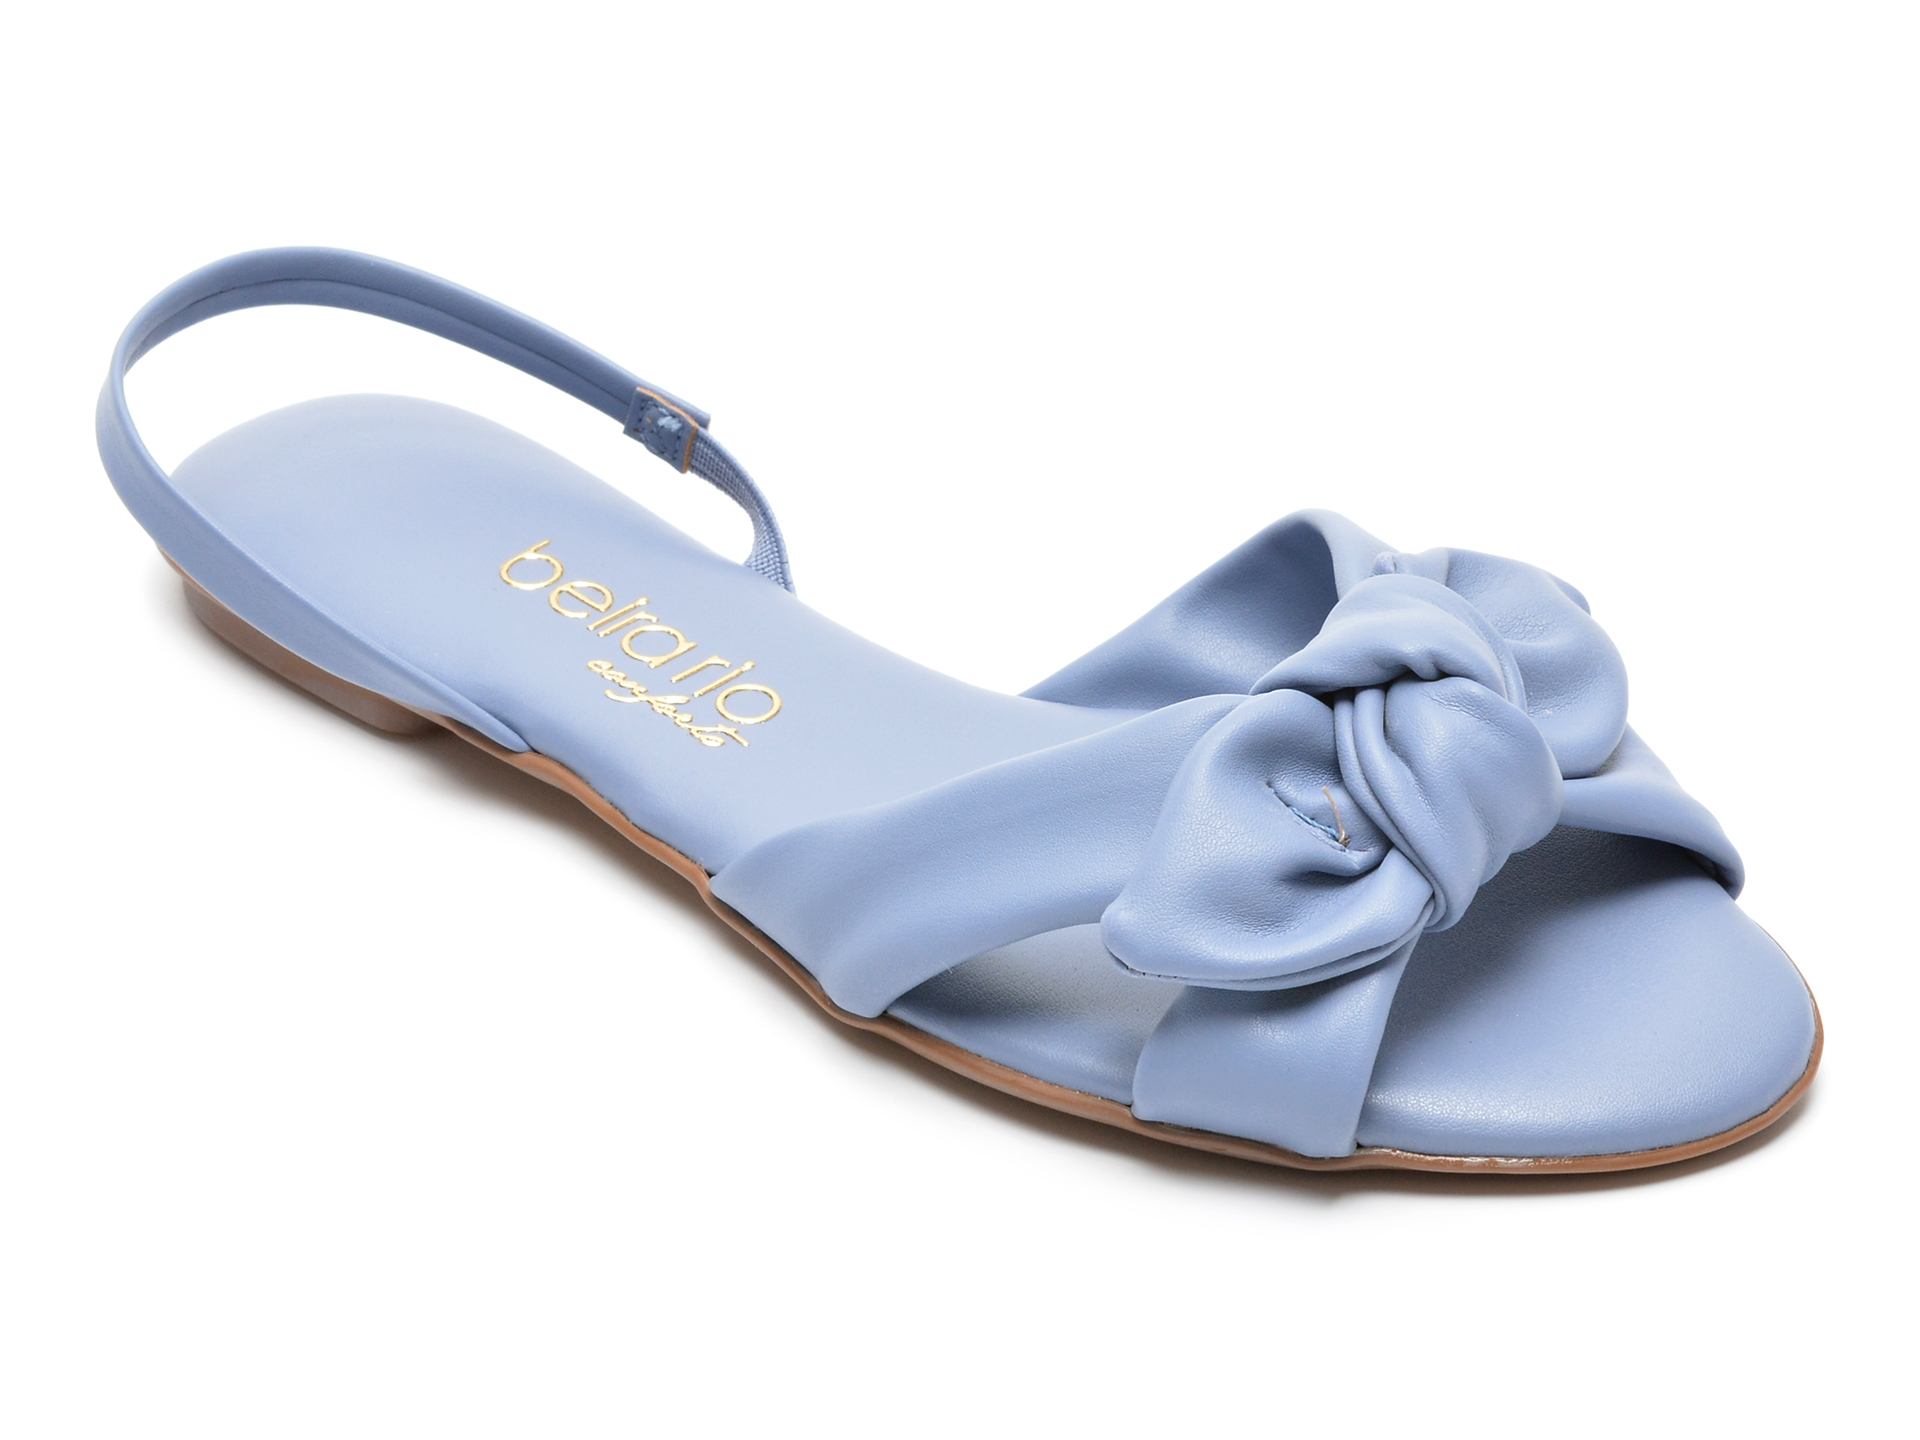 Sandale BEIRA RIO albastre, 8226108, din piele ecologica /femei/sandale